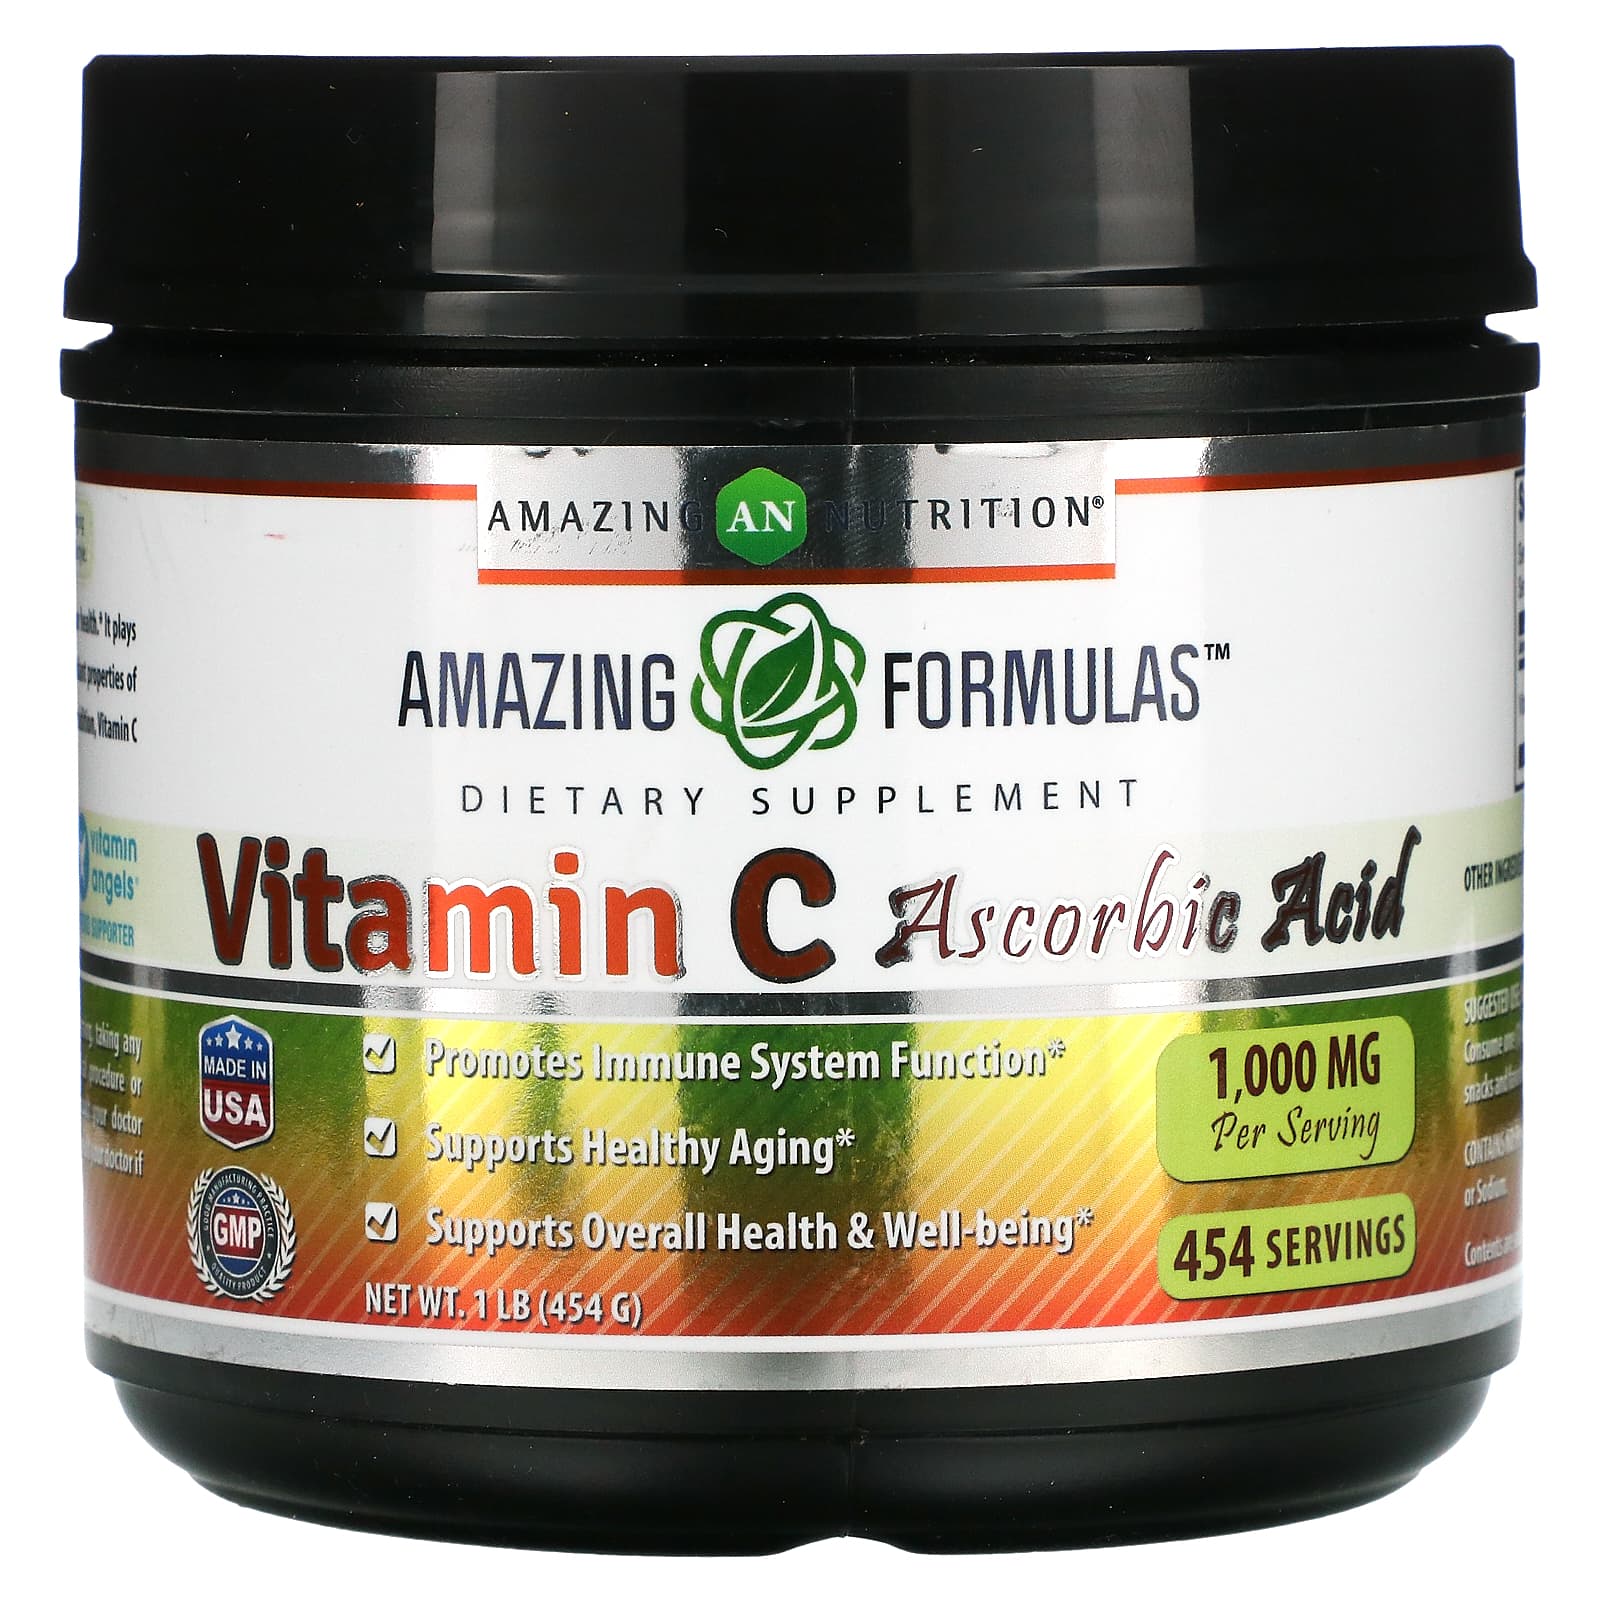 Витамин C Amazing Nutrition аскорбиновая кислота, 454 г amazing nutrition витамин c аскорбиновая кислота 1000 мг 454 г 1 фунт